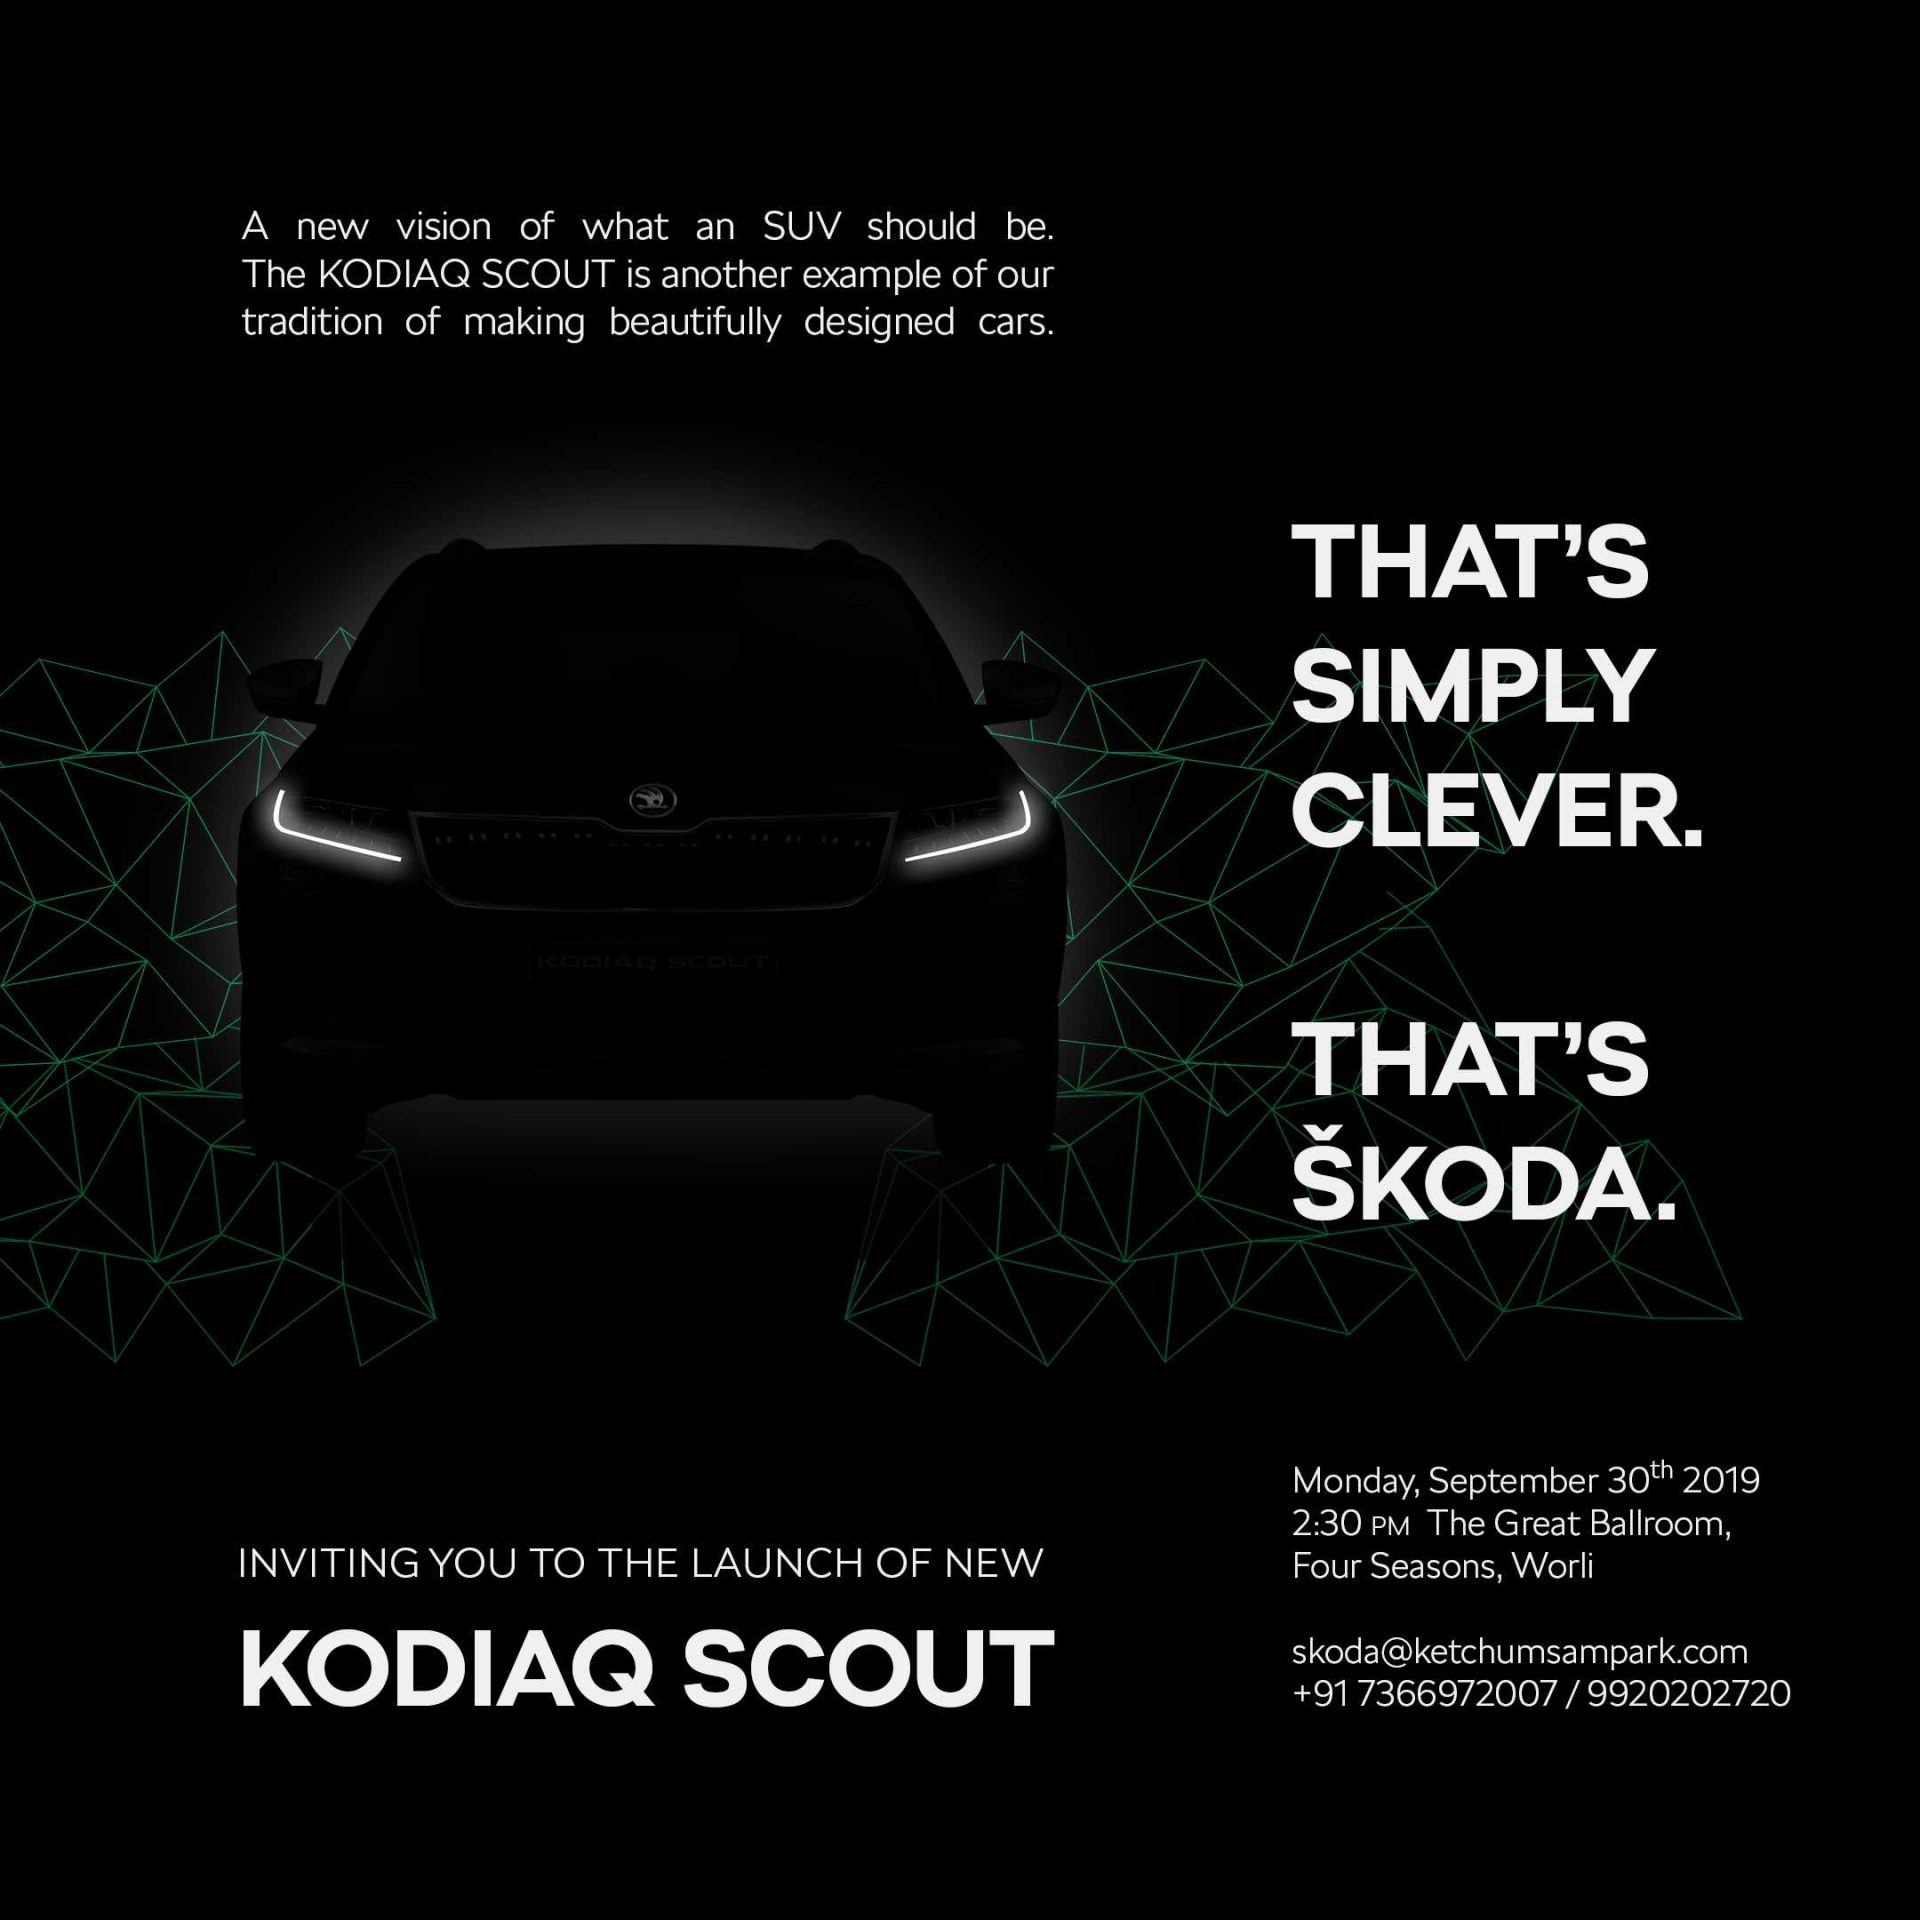 Kodiaq Scout invite